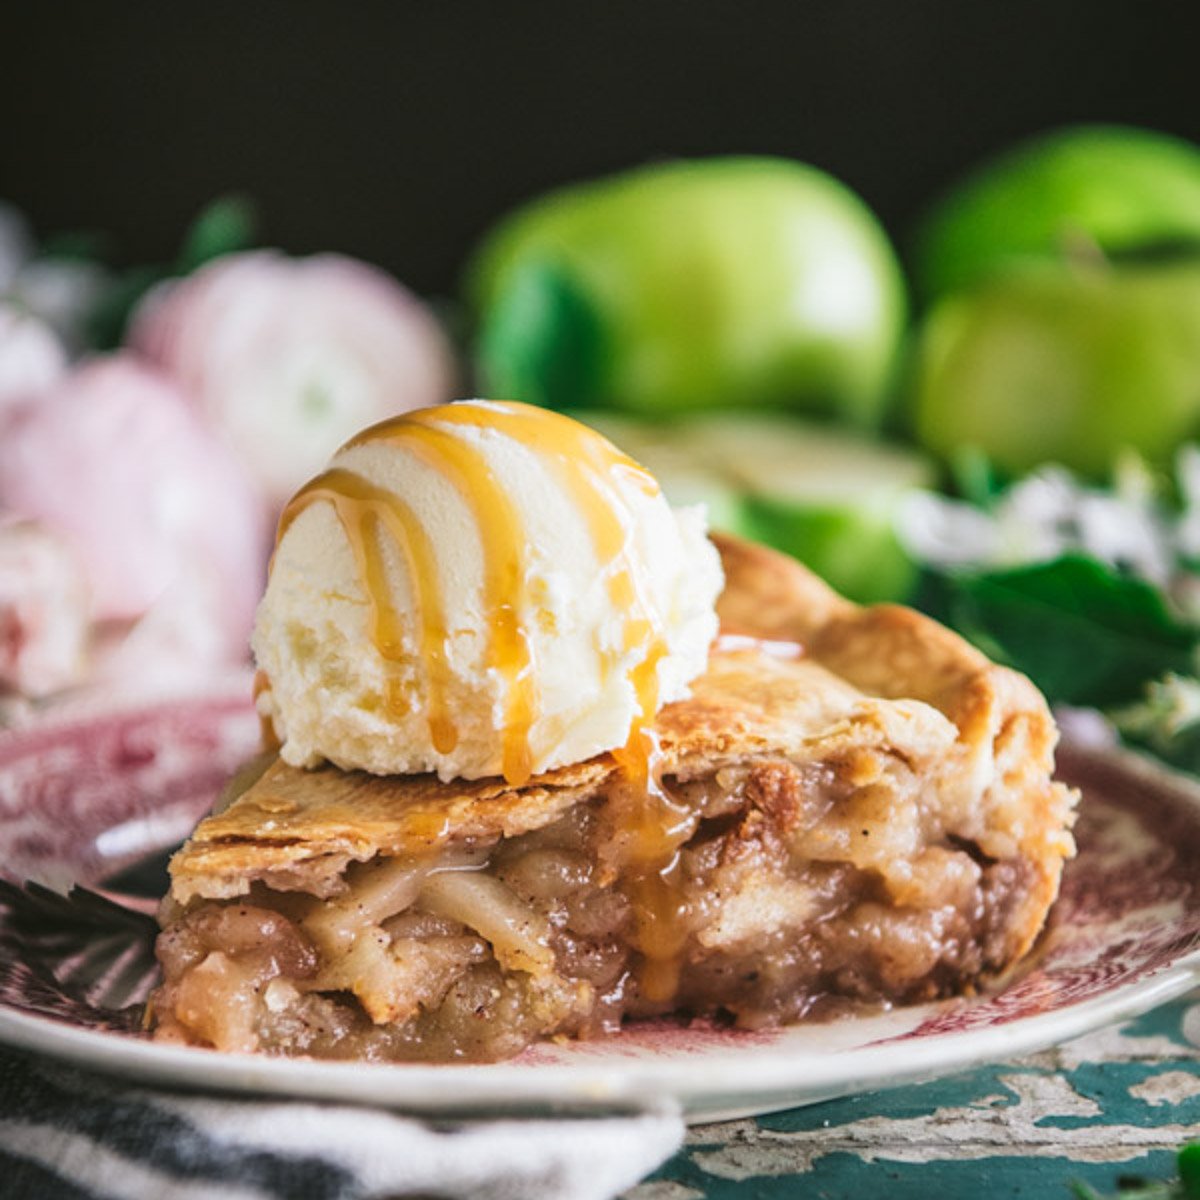 Easy Homemade Apple Pie